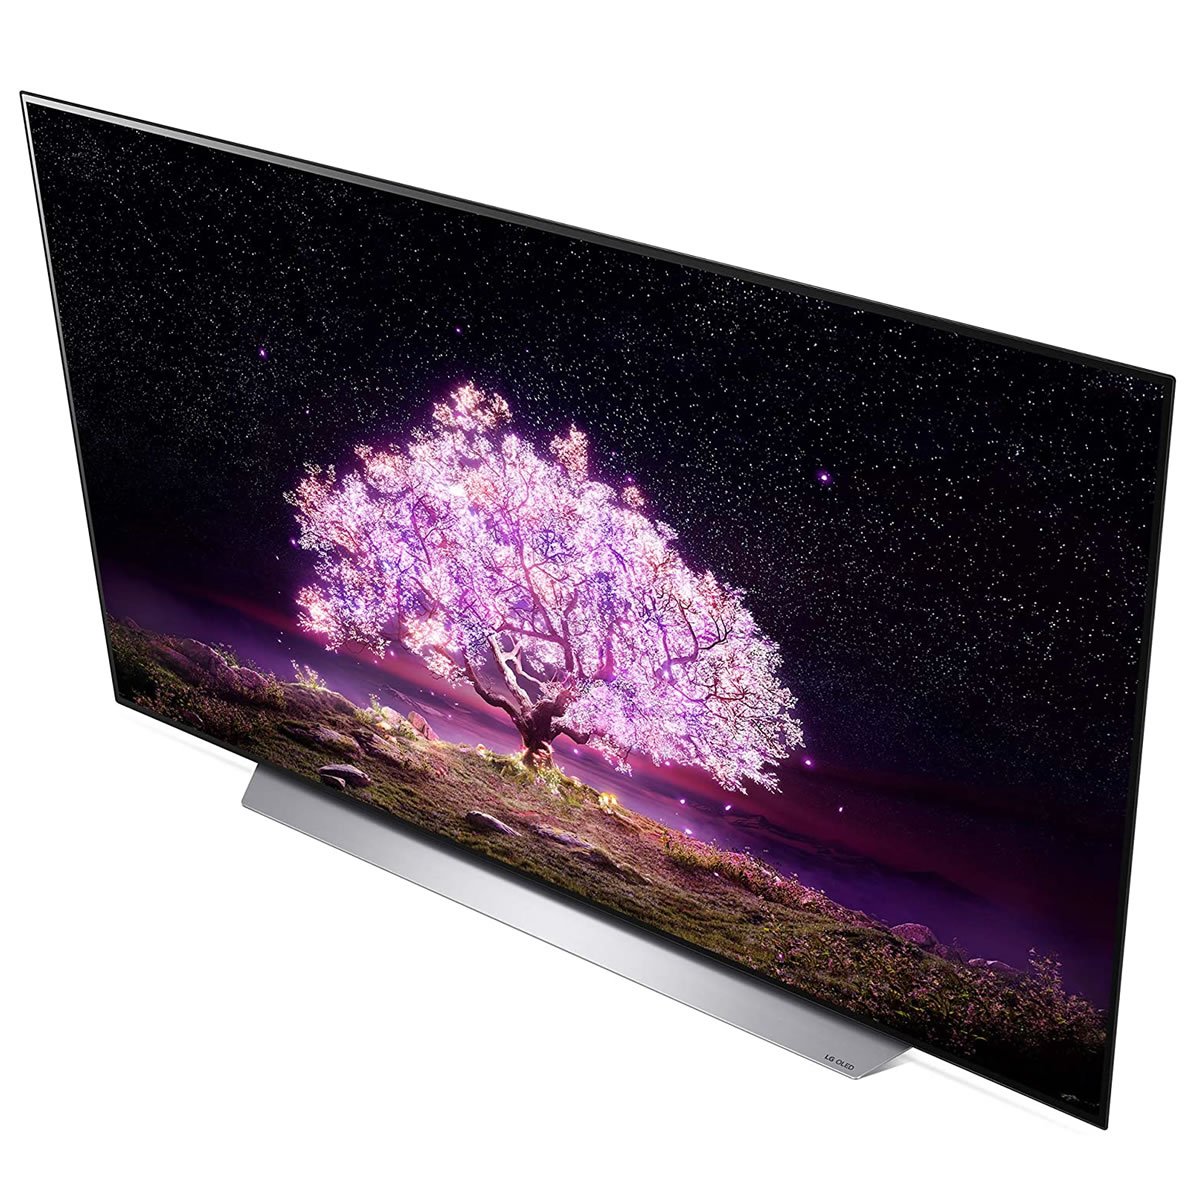 Pantalla 4k Smart TV 65 Pulgadas OLED LG OLED65C1PSA CST